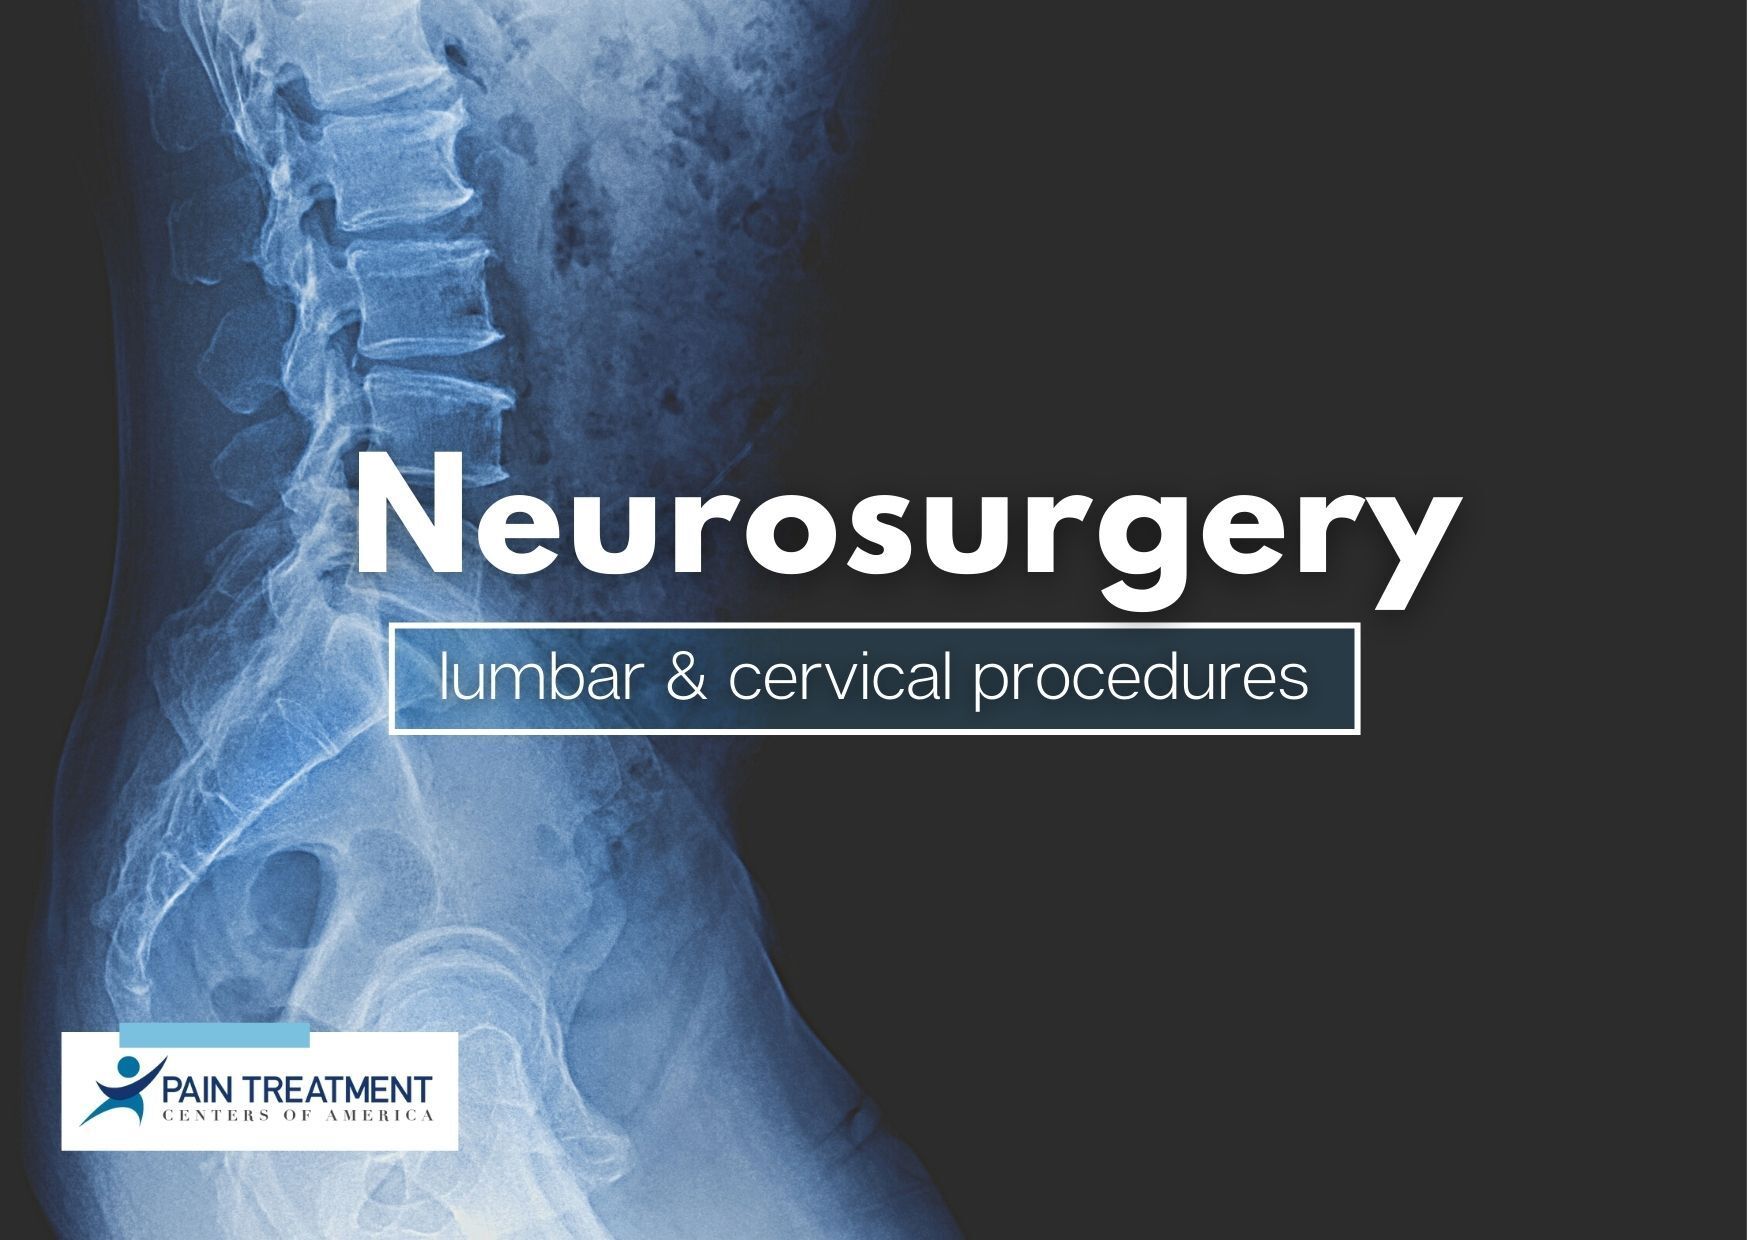 neurosurgery - lumbar and cervical